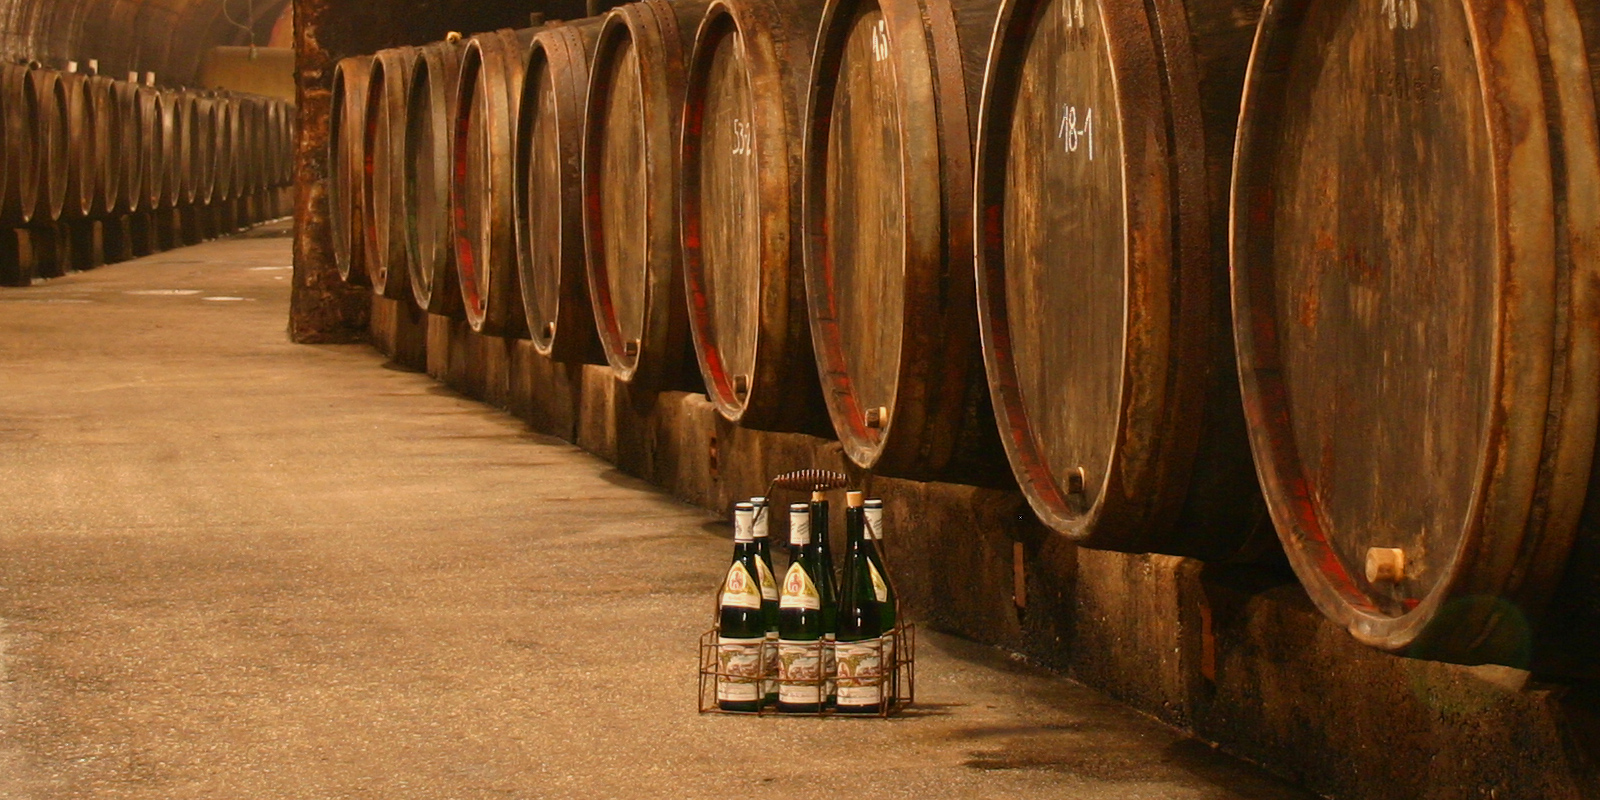 Domaine viticole Maximin Grunhaus - Region viticole de Moselle La cave est situee au pied d`un vaste versant sud raide, sur le cote gauche de la Ruwer. Le vignoble arrondi et ferme de Maximin Grunhaus avec les vignobles individuels Abtsberg, Herrenberg et Bruderberg appartiennent uniquement a la famille Schubert.